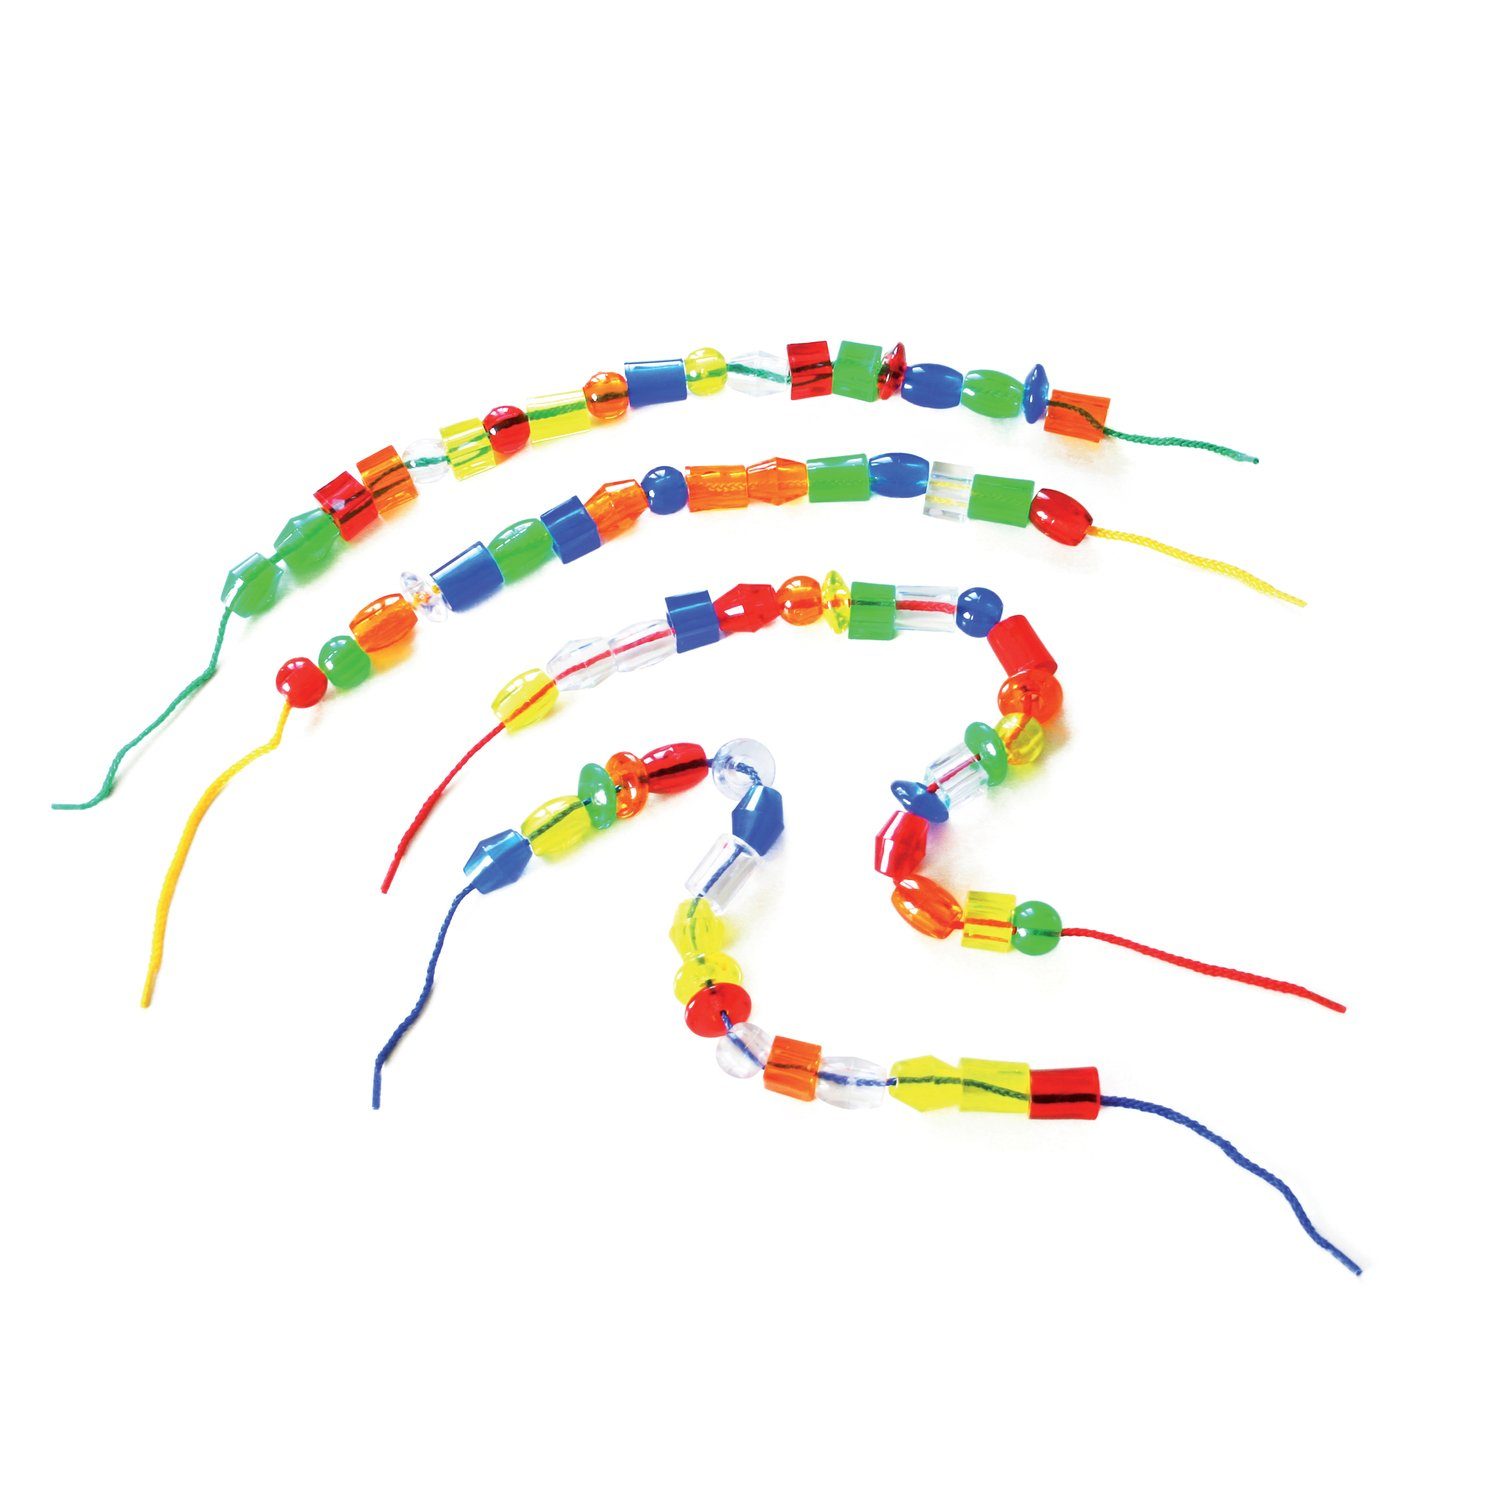 EDUPLAY Lernspielzeug Transparente Fädelperlen, aus Acryl, ca. 70 Perlen und 4 Schnüre